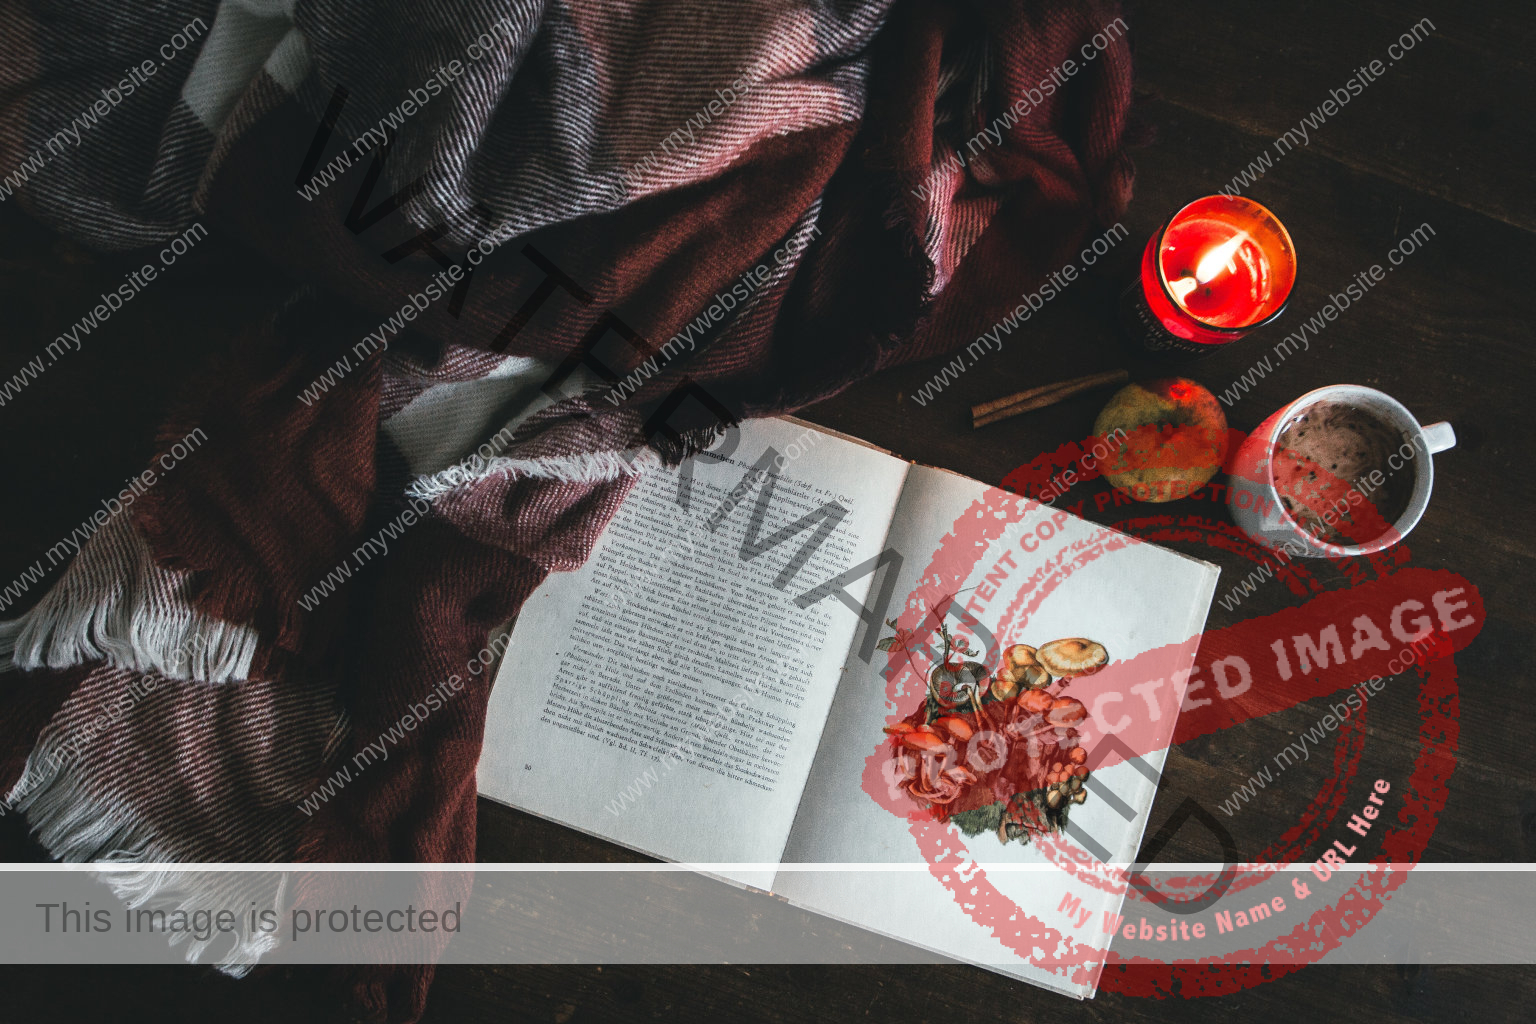 Ein aufgeschlagenes Buch über Pilz auf einem dunklen Boden, eine rotkarierte Decke, rote Kerze und Kakao daneben